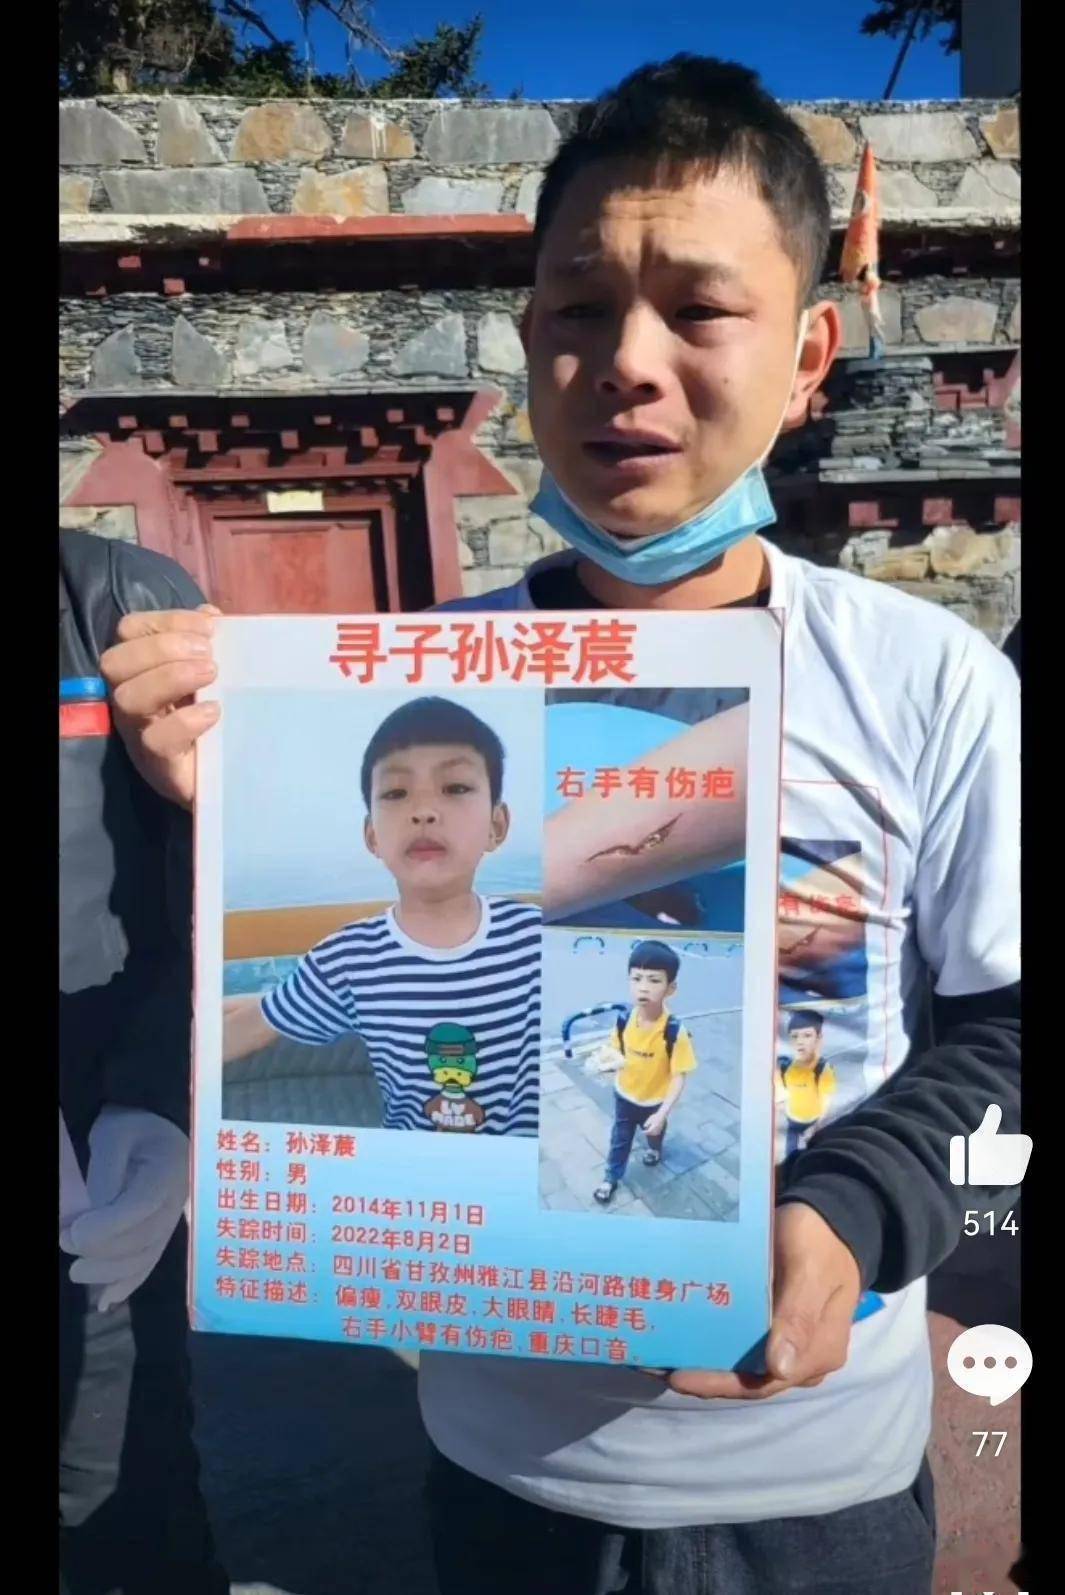 警方回应“任贤齐、张震岳等人转发男童失踪案”已经立案侦查